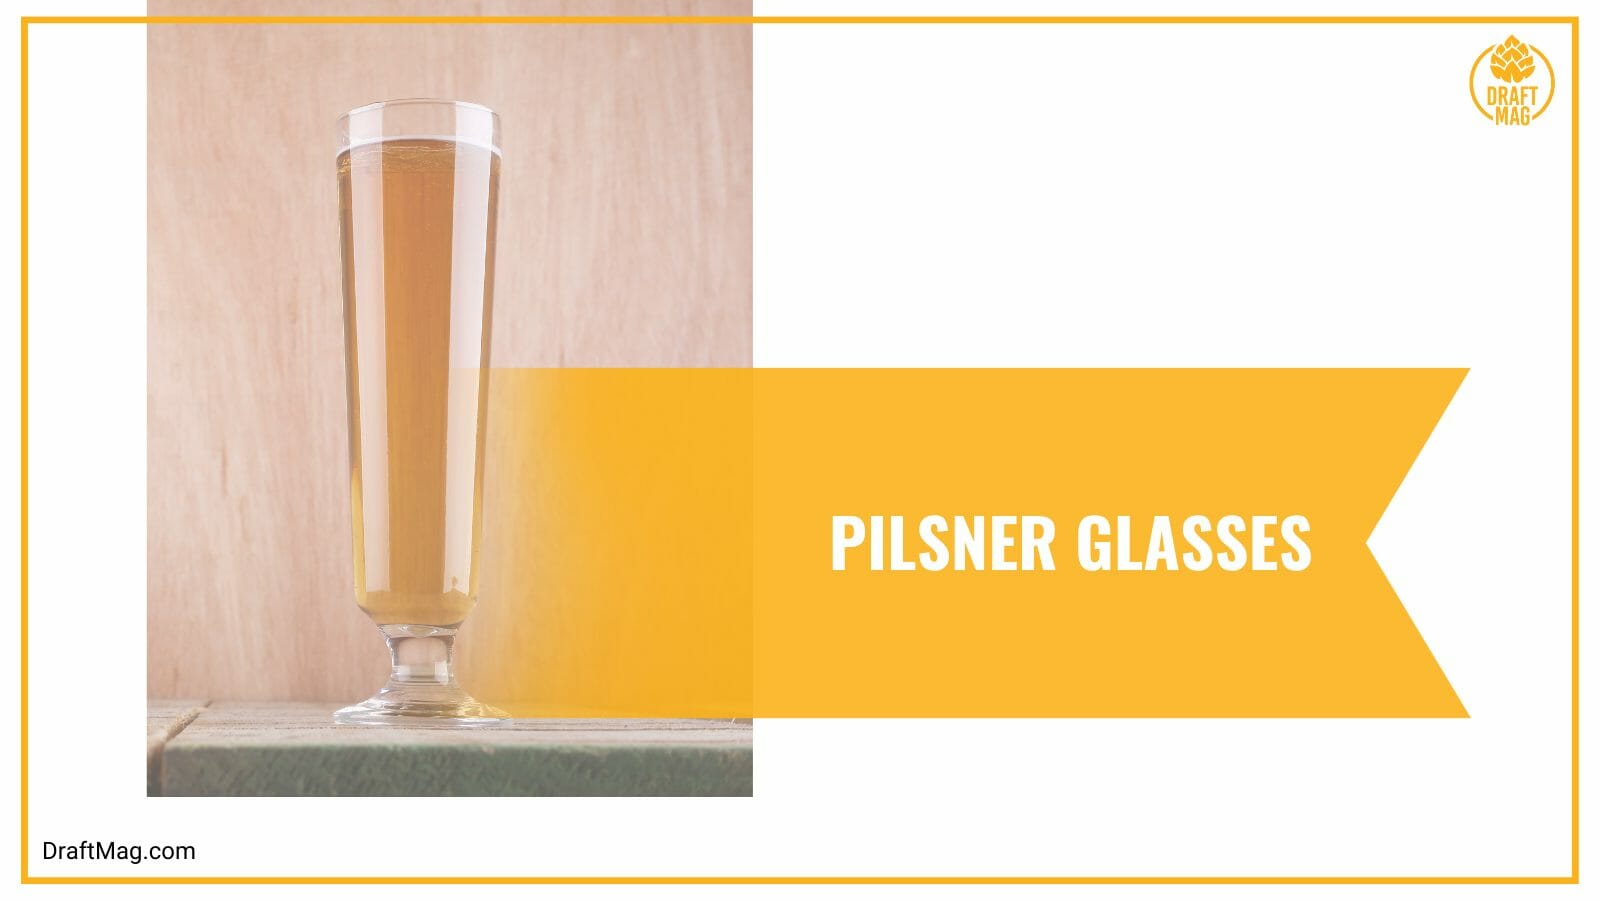 Pilsner glasses